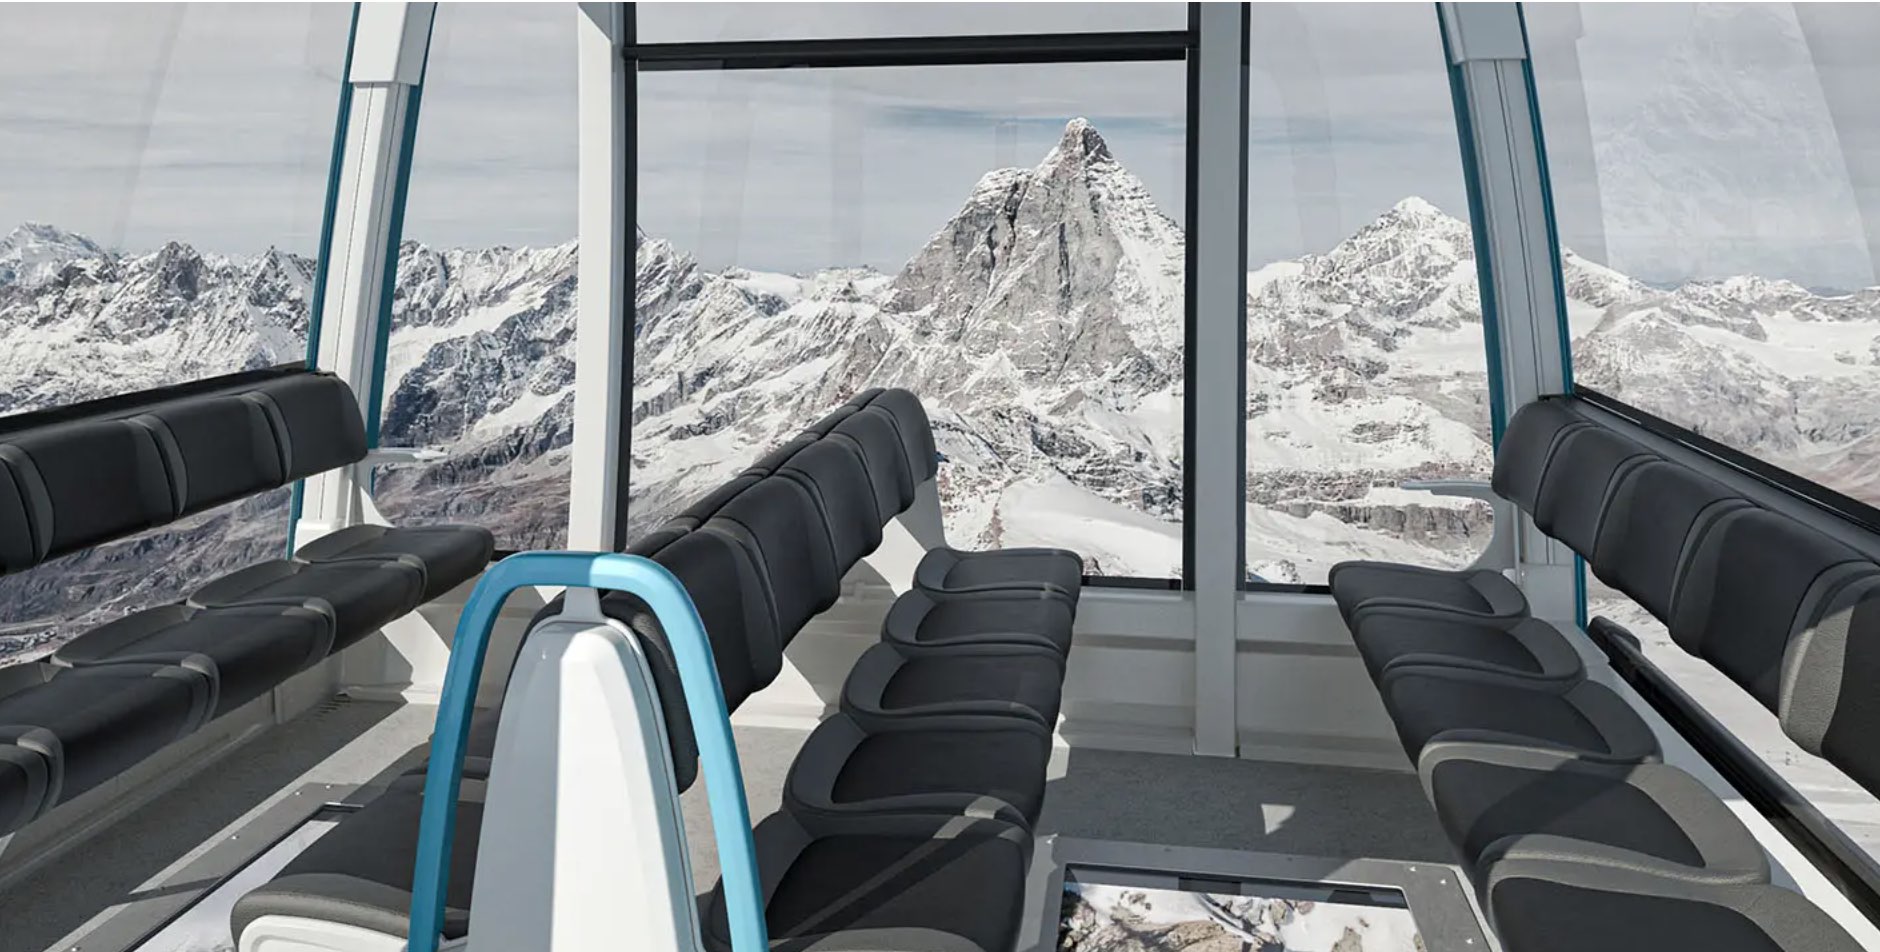 Lujo en el telecabina alpino más alto del mundo: 240 francos para ir y volver Zermatt-Cervinia